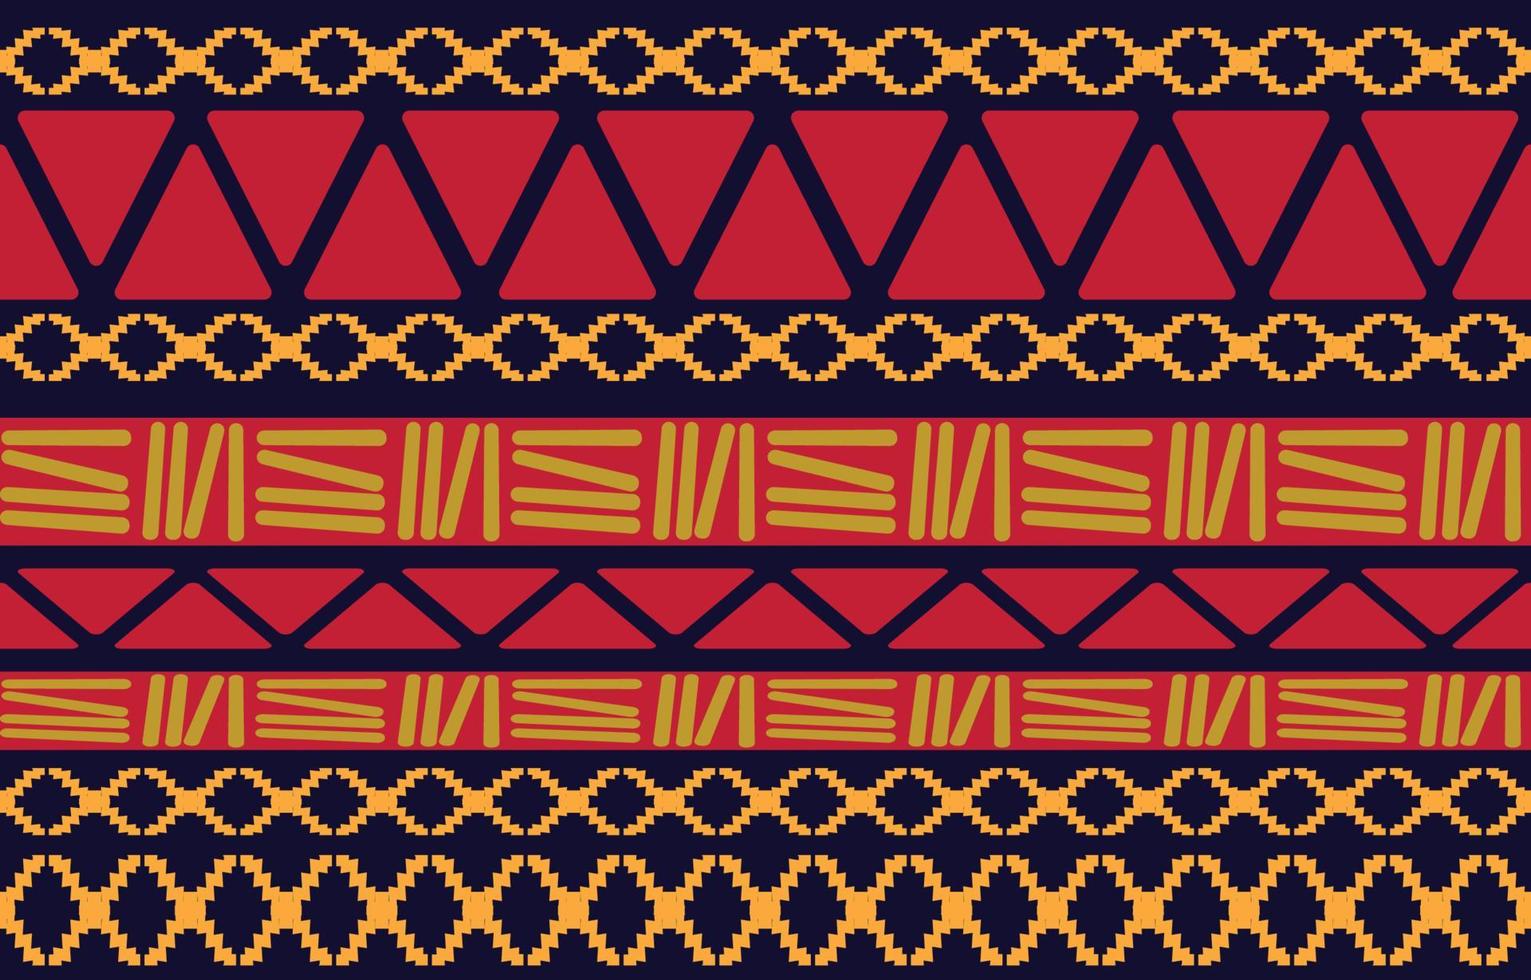 patrón étnico tribal oriental geométrico diseño de fondo tradicional para alfombra, papel pintado, ropa, envoltura, batik, tela, estilo de bordado de ilustración vectorial. vector